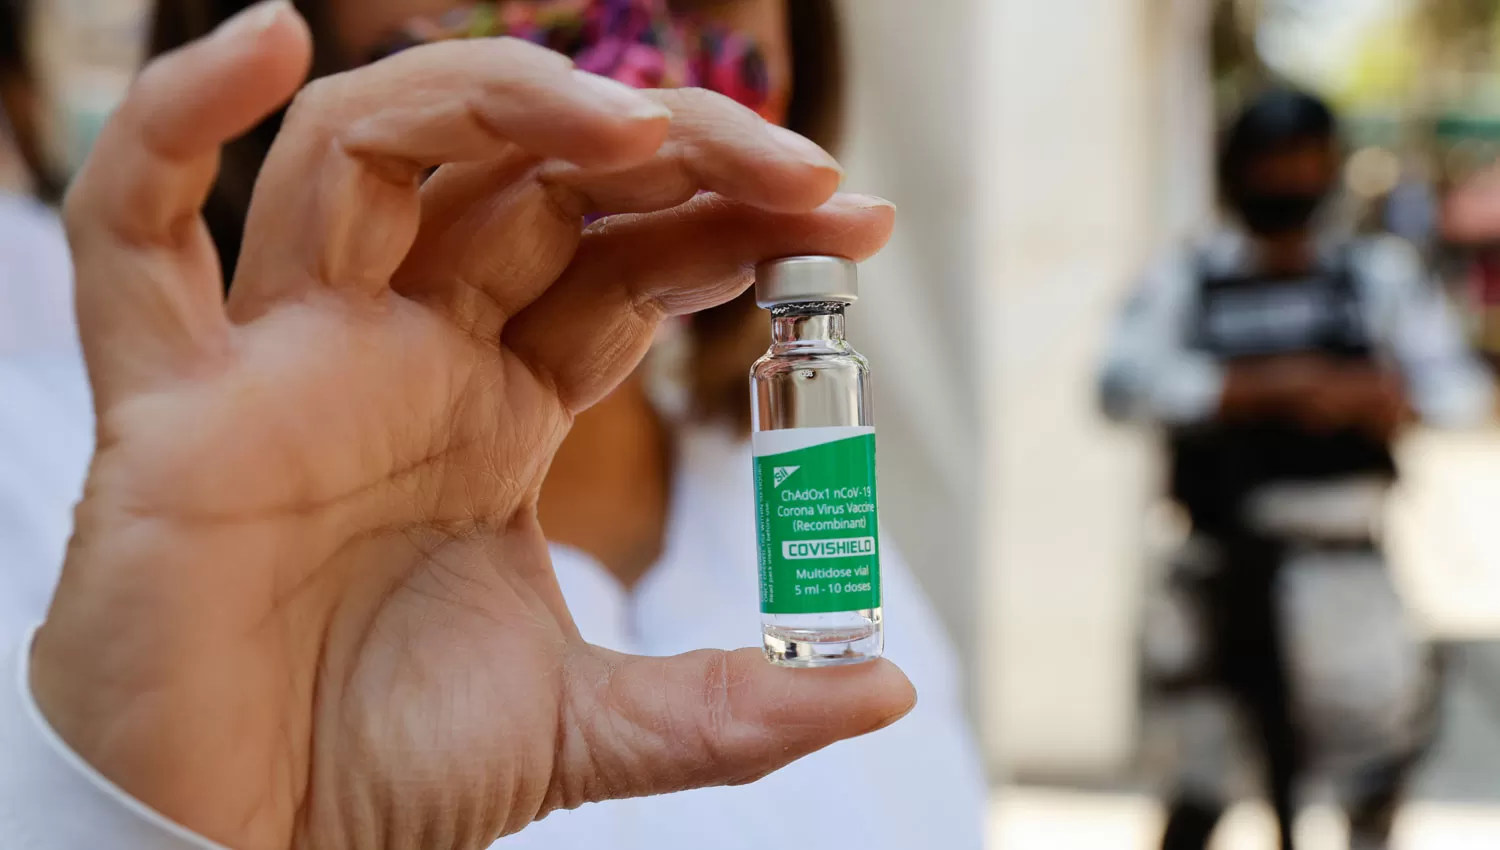 LA VACUNA. La OMS quiere ayudar a países con dificultades para acceder a la inmunización.